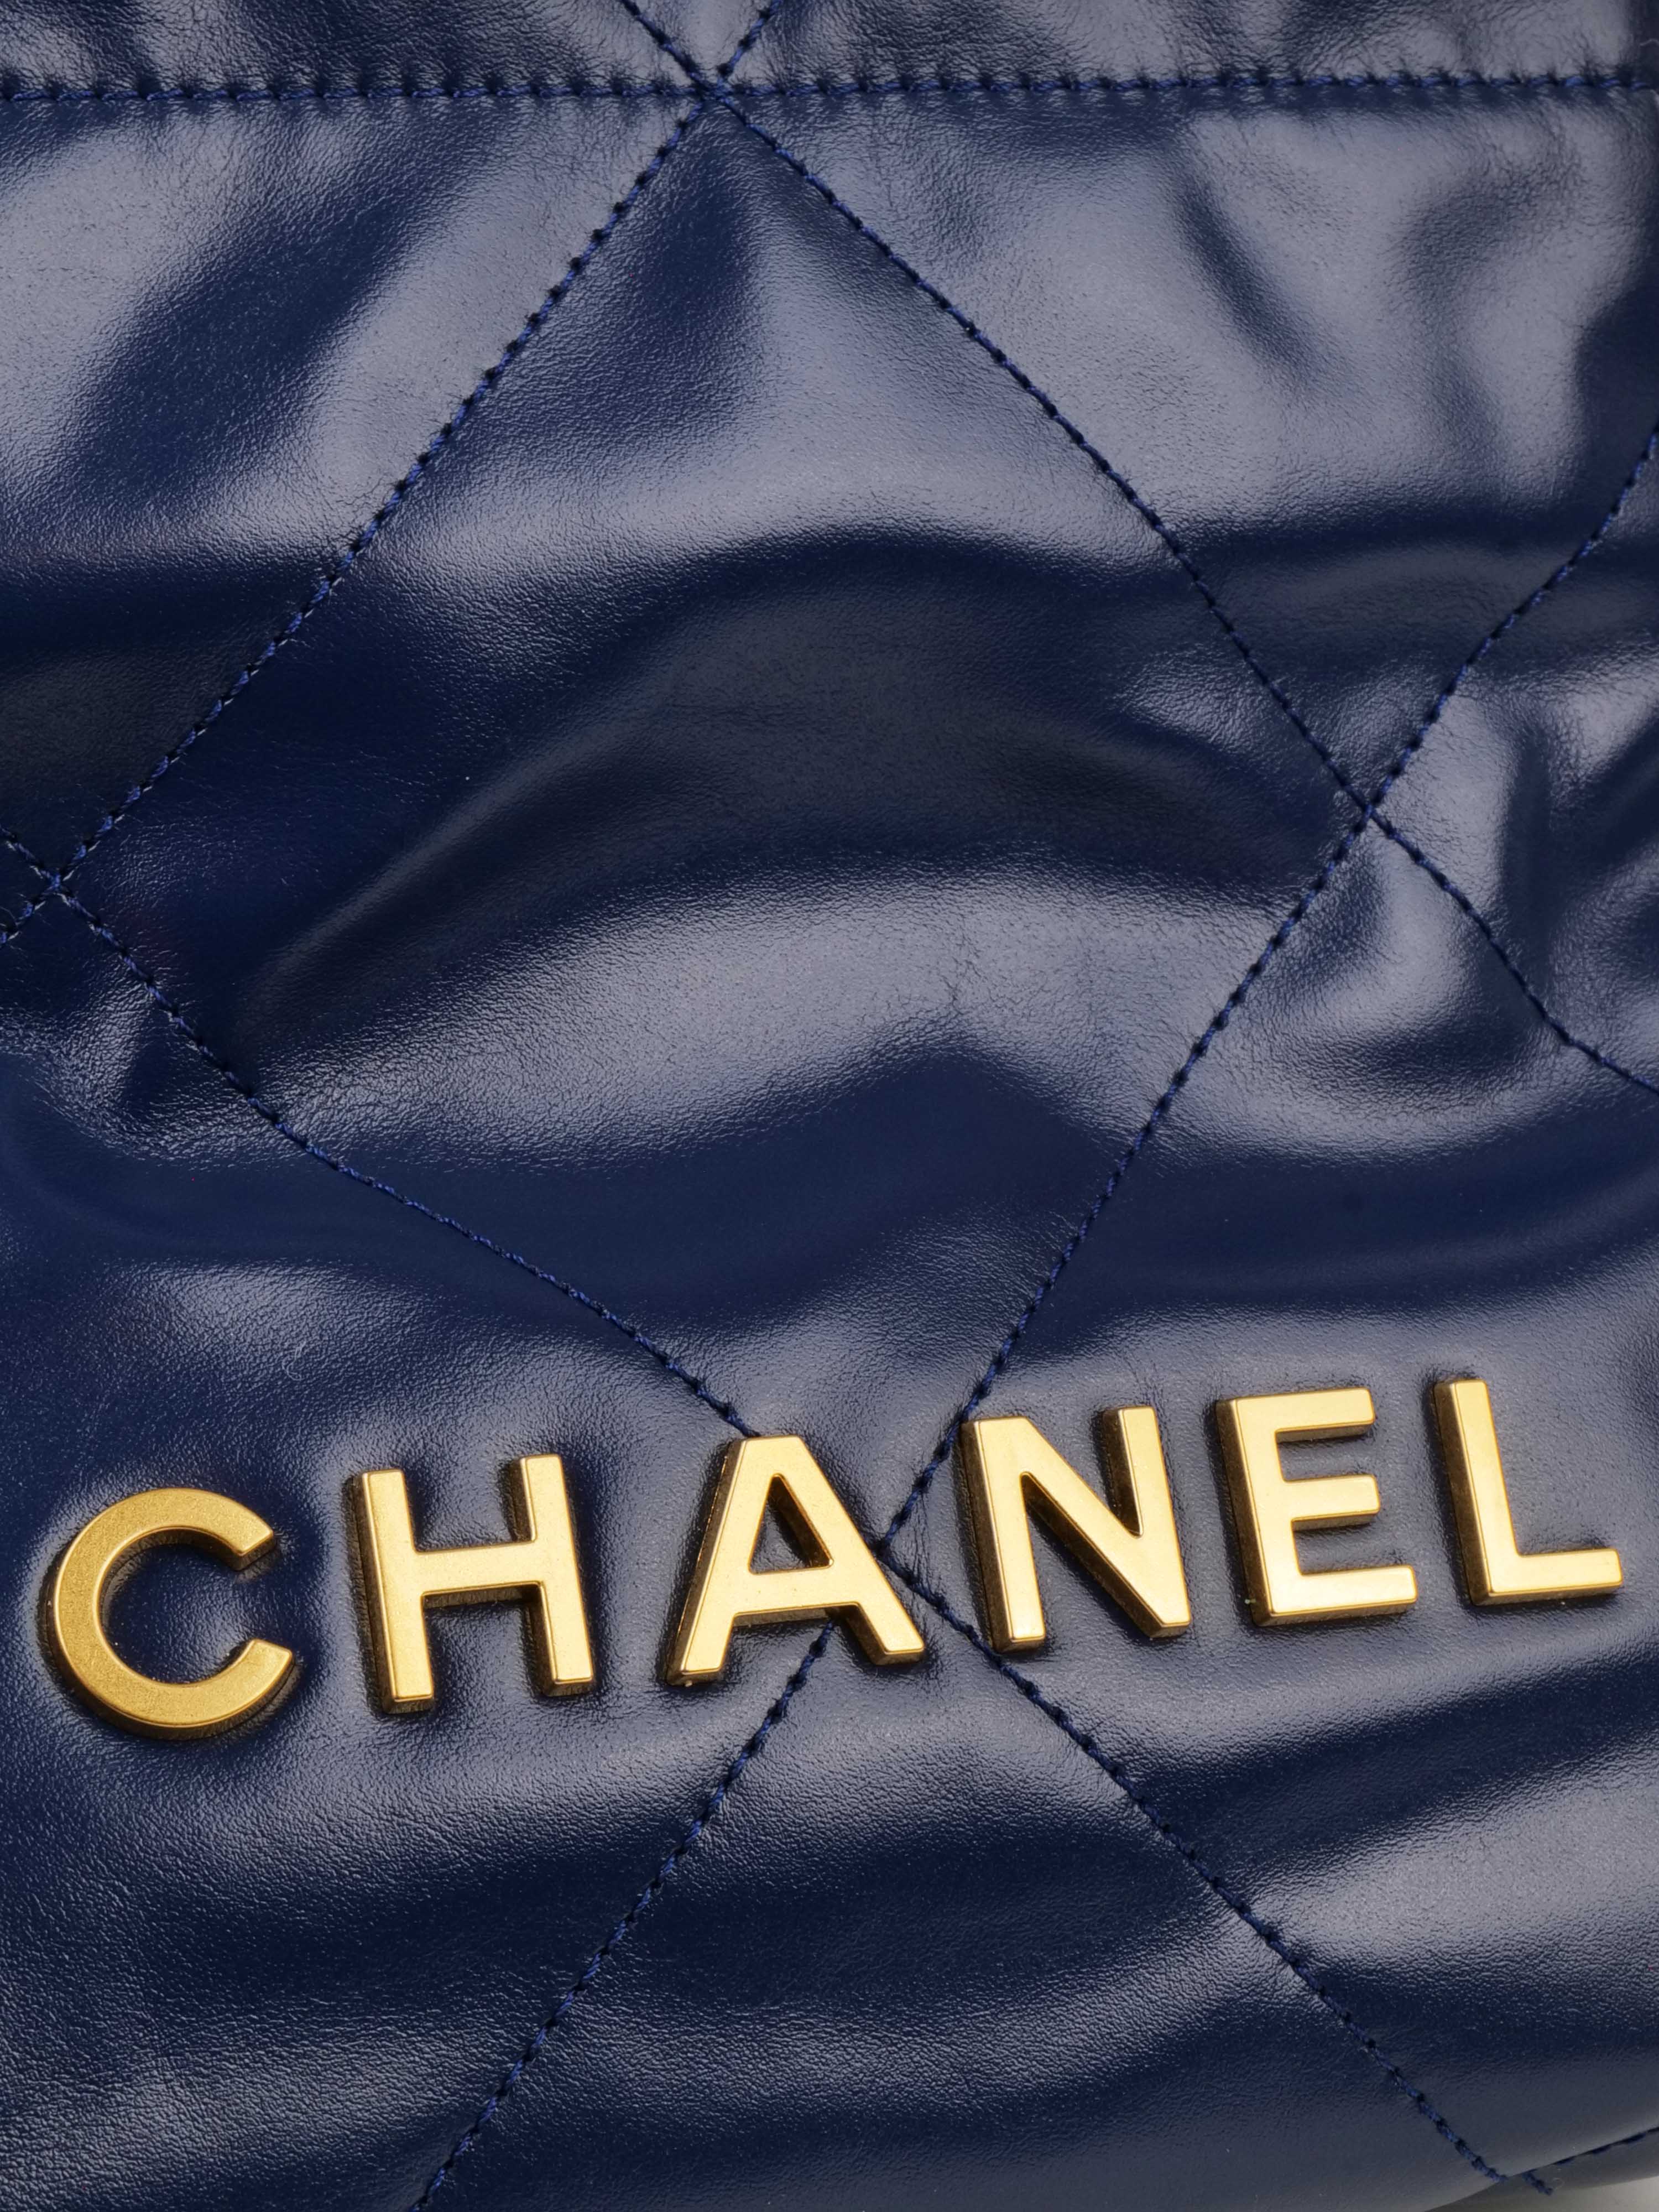 Chanel 22 Navy Mini Shoulder Bag.